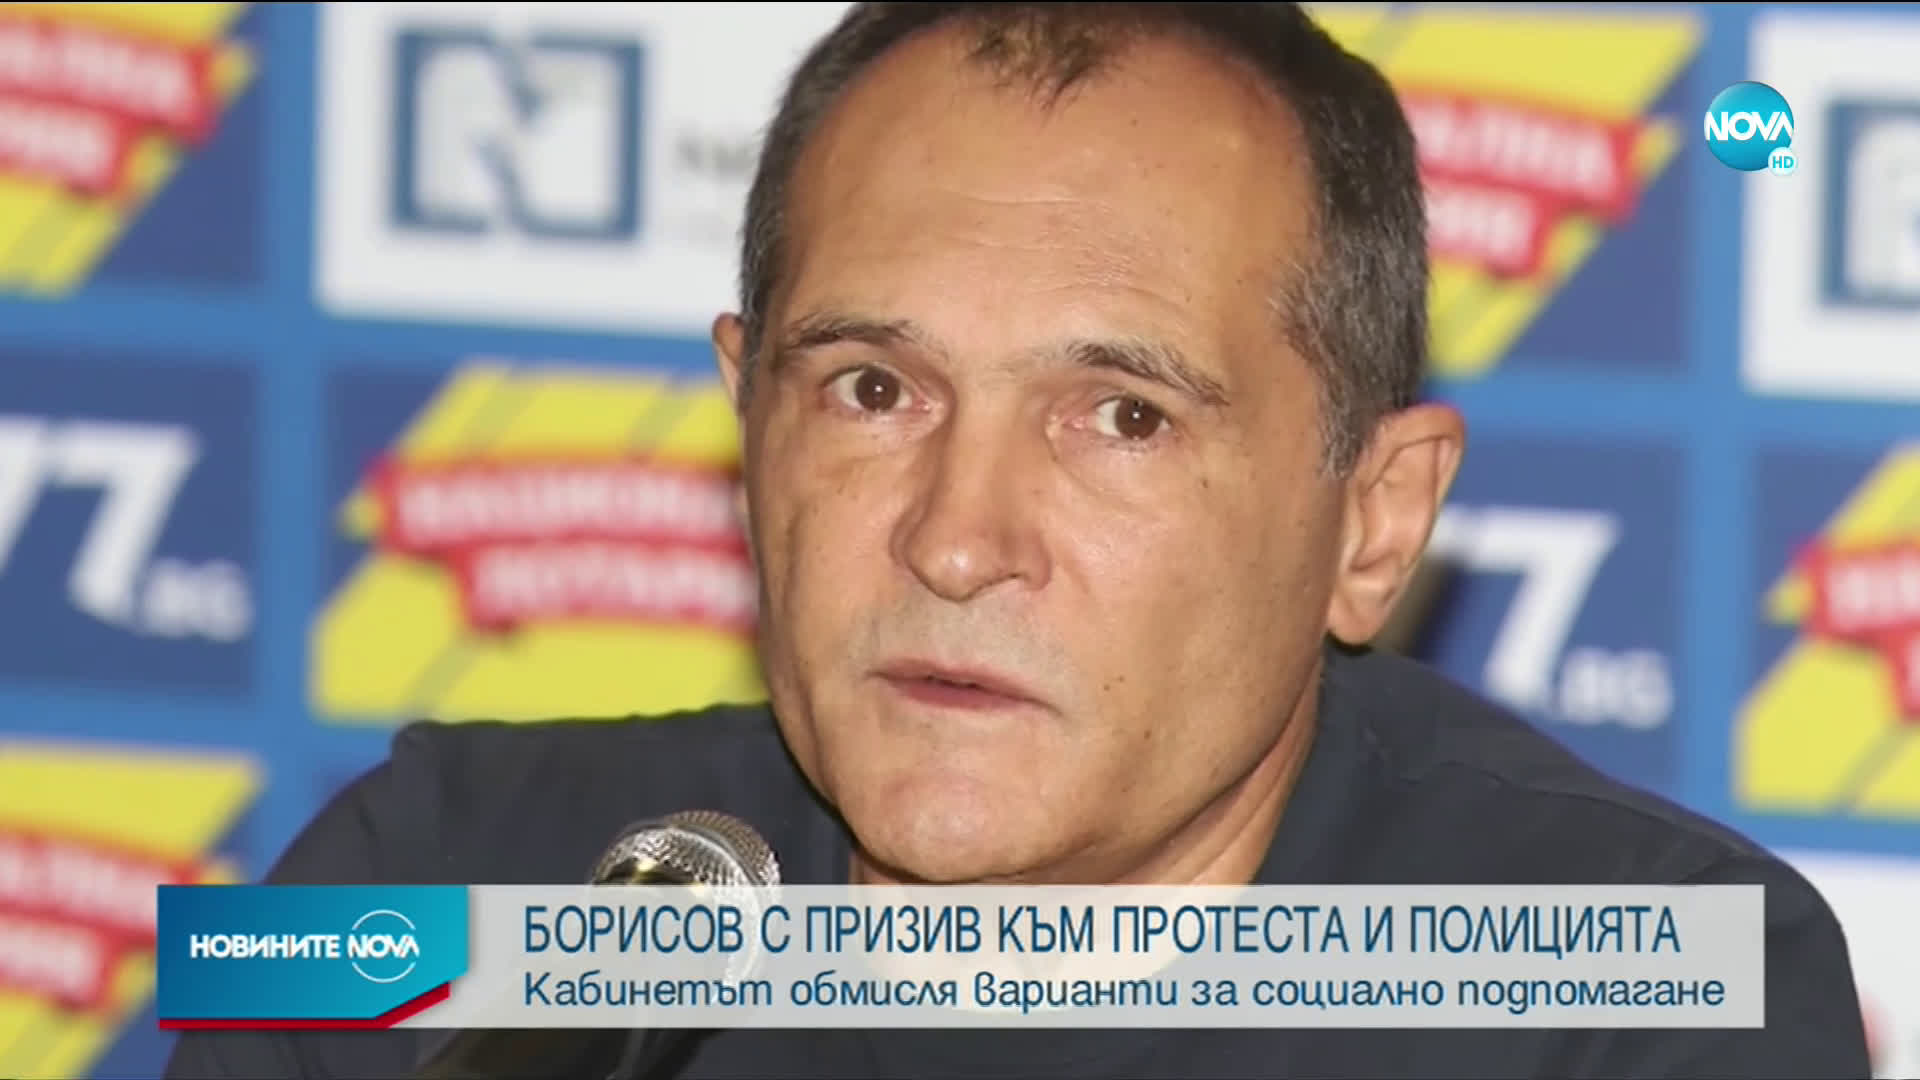 Борисов към протестиращите: Чуваме ви, мислим и предлагаме варианти за подпомагане във всички сфери